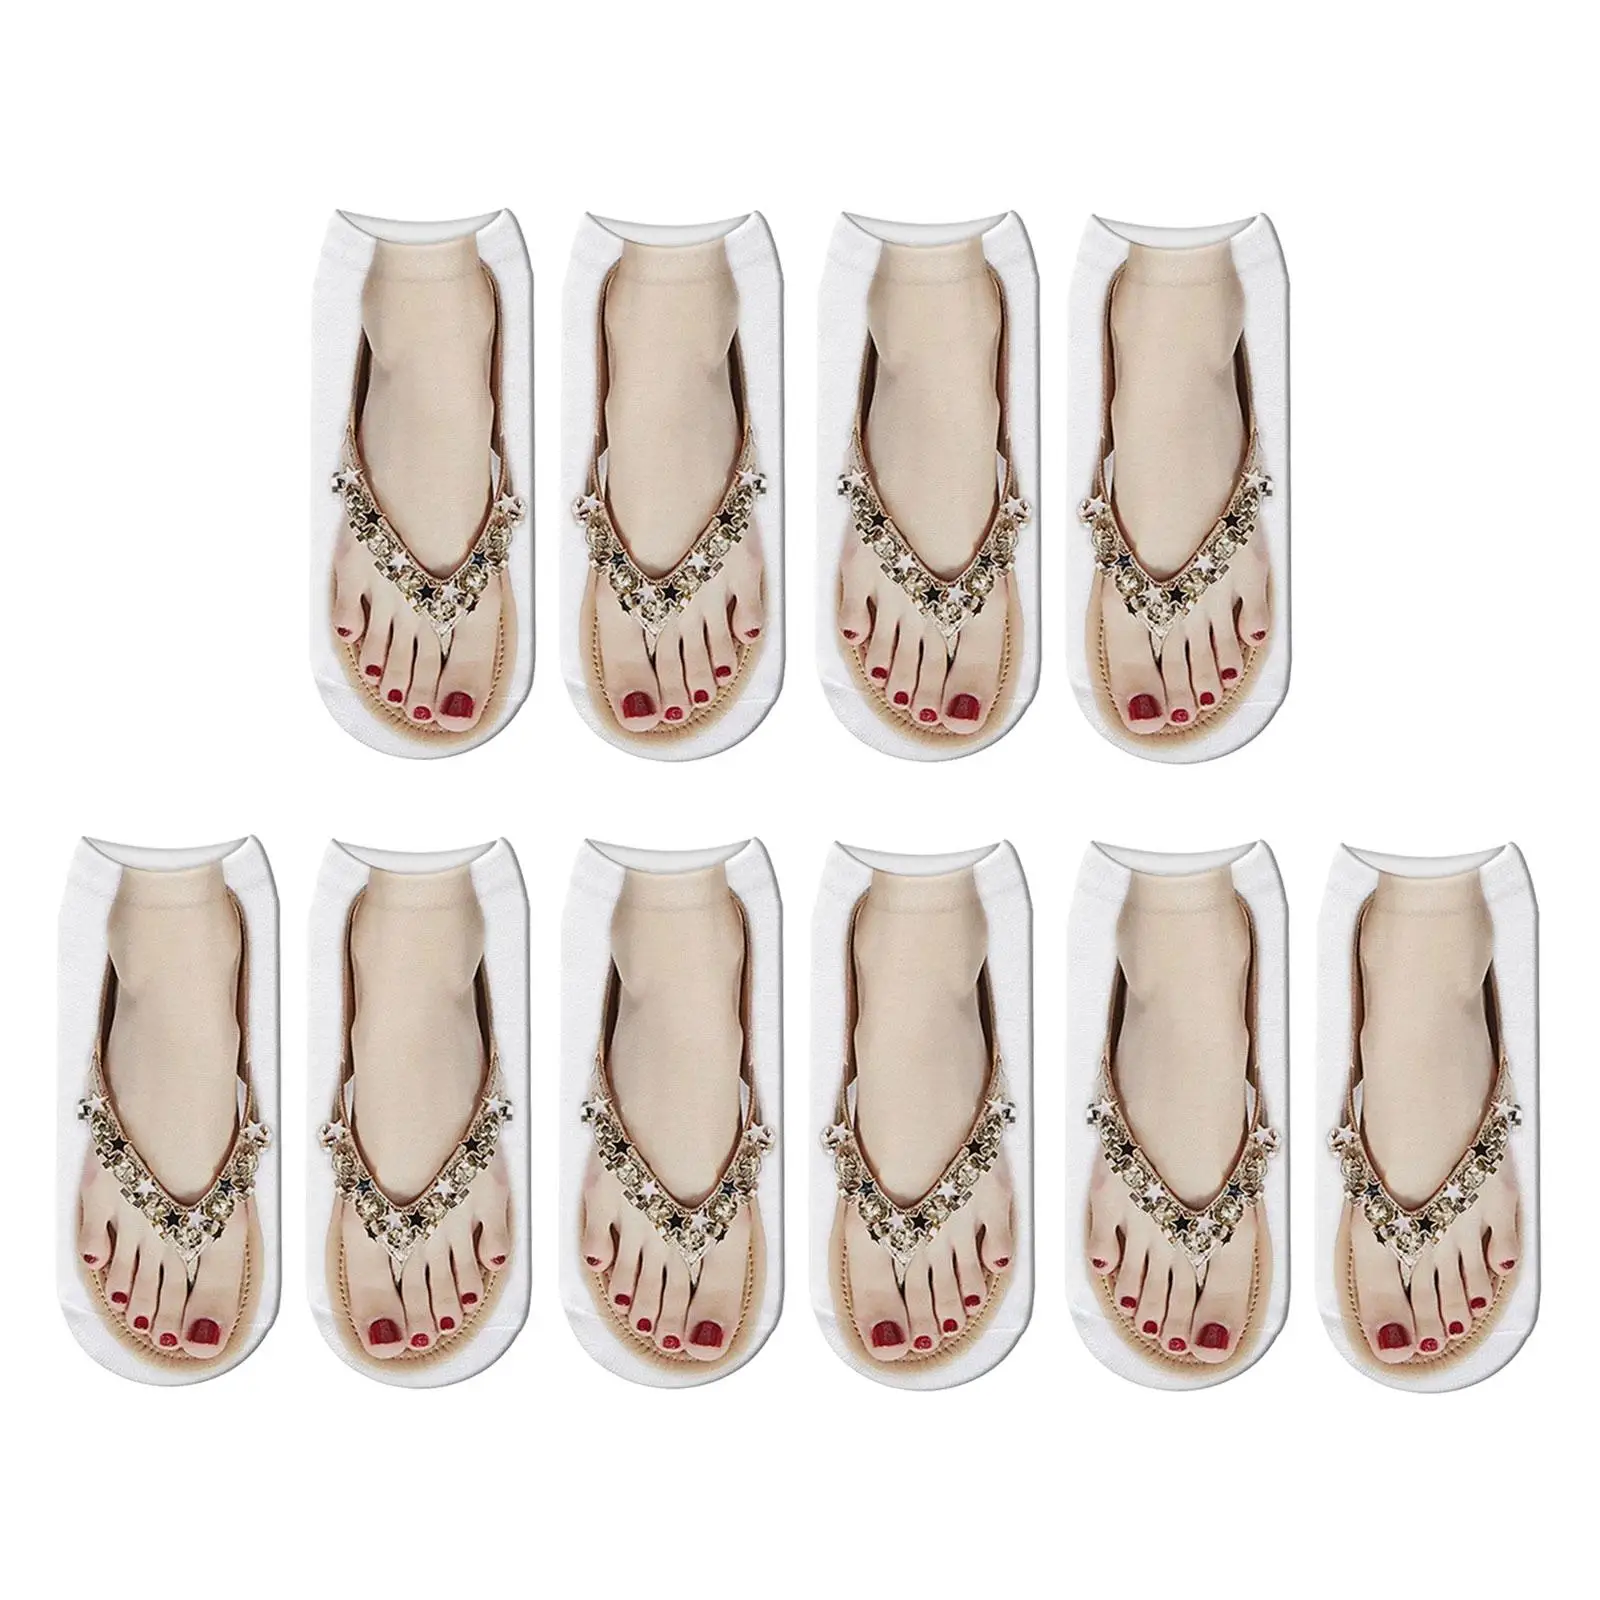 Носки с рисунком для маникюра, носки с 3D рисунком, без показа мультяшных скрытых модных забавных чулок, носки до щиколоток для занятий йогой, прогулок с девушками1